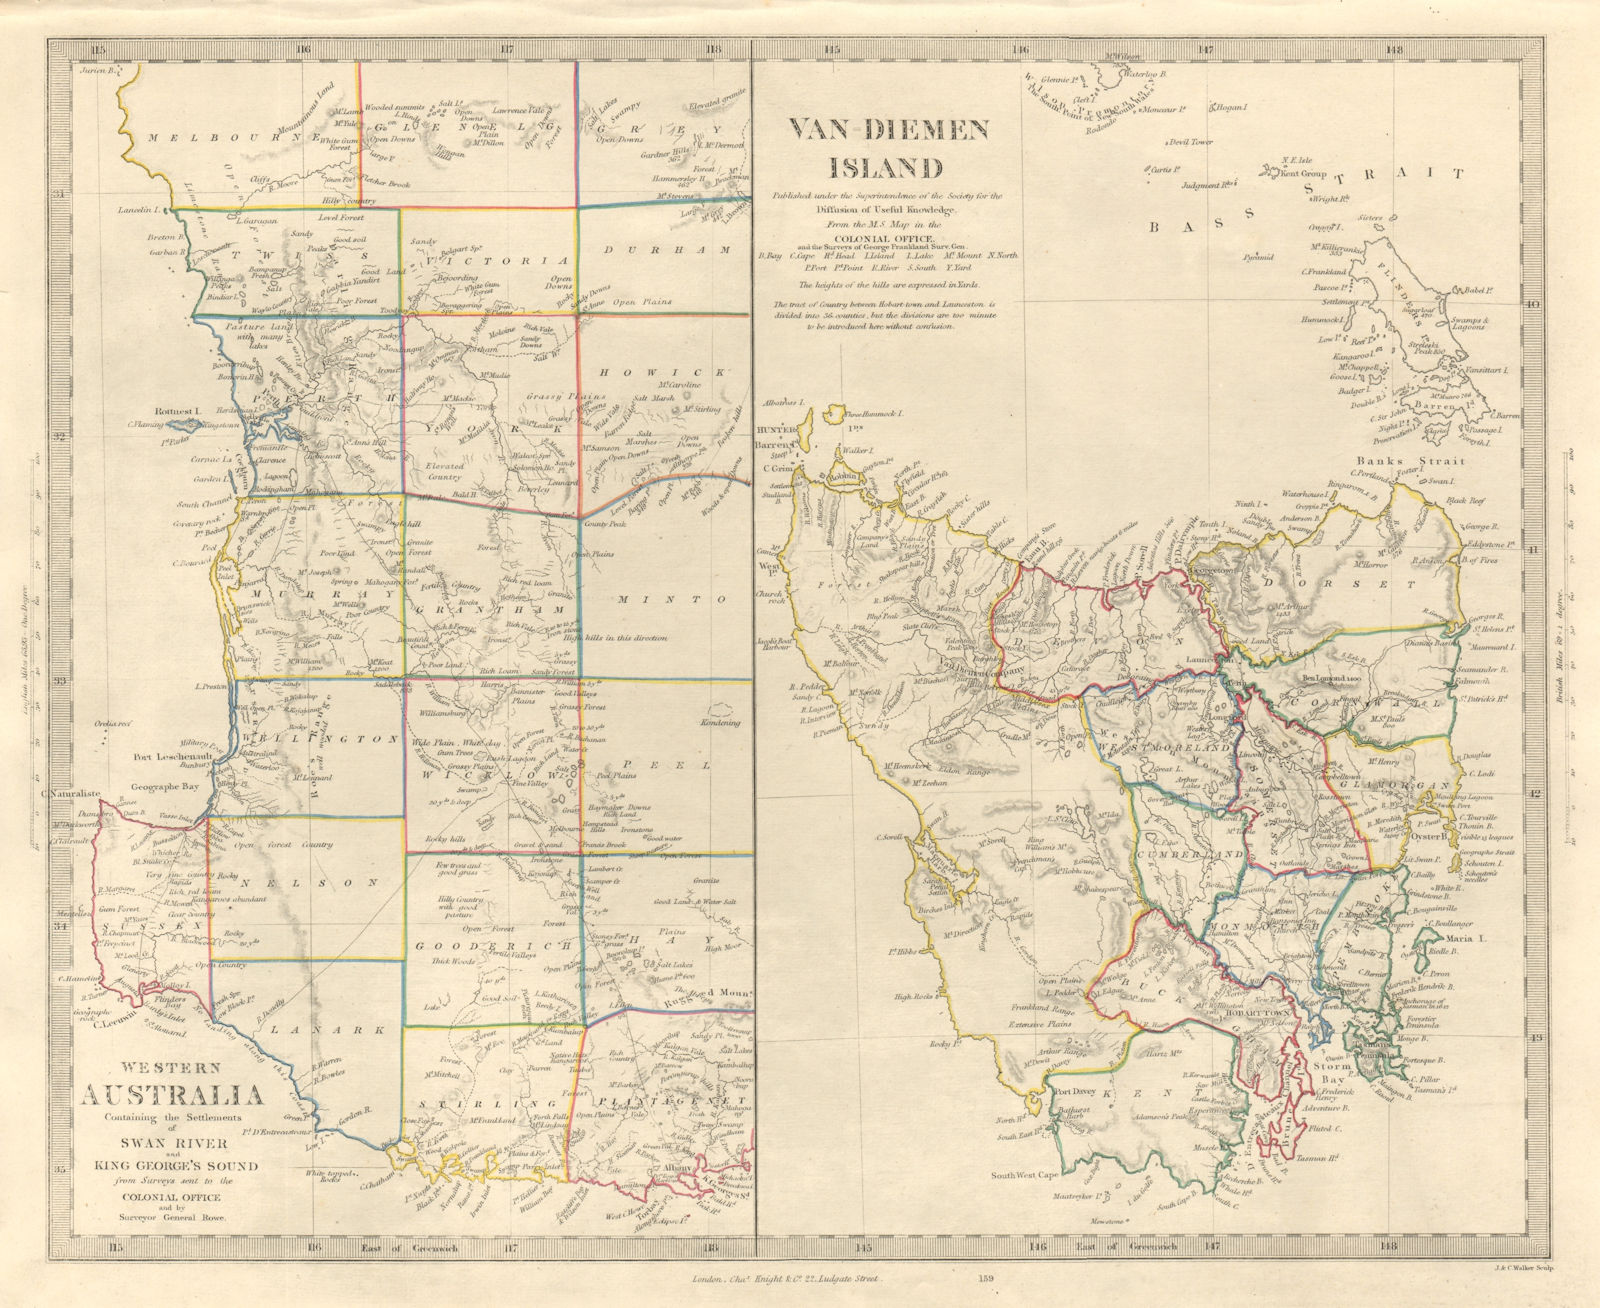 AUSTRALIA. Western Australia & Van Diemen Island (Tasmania) . SDUK 1846 map